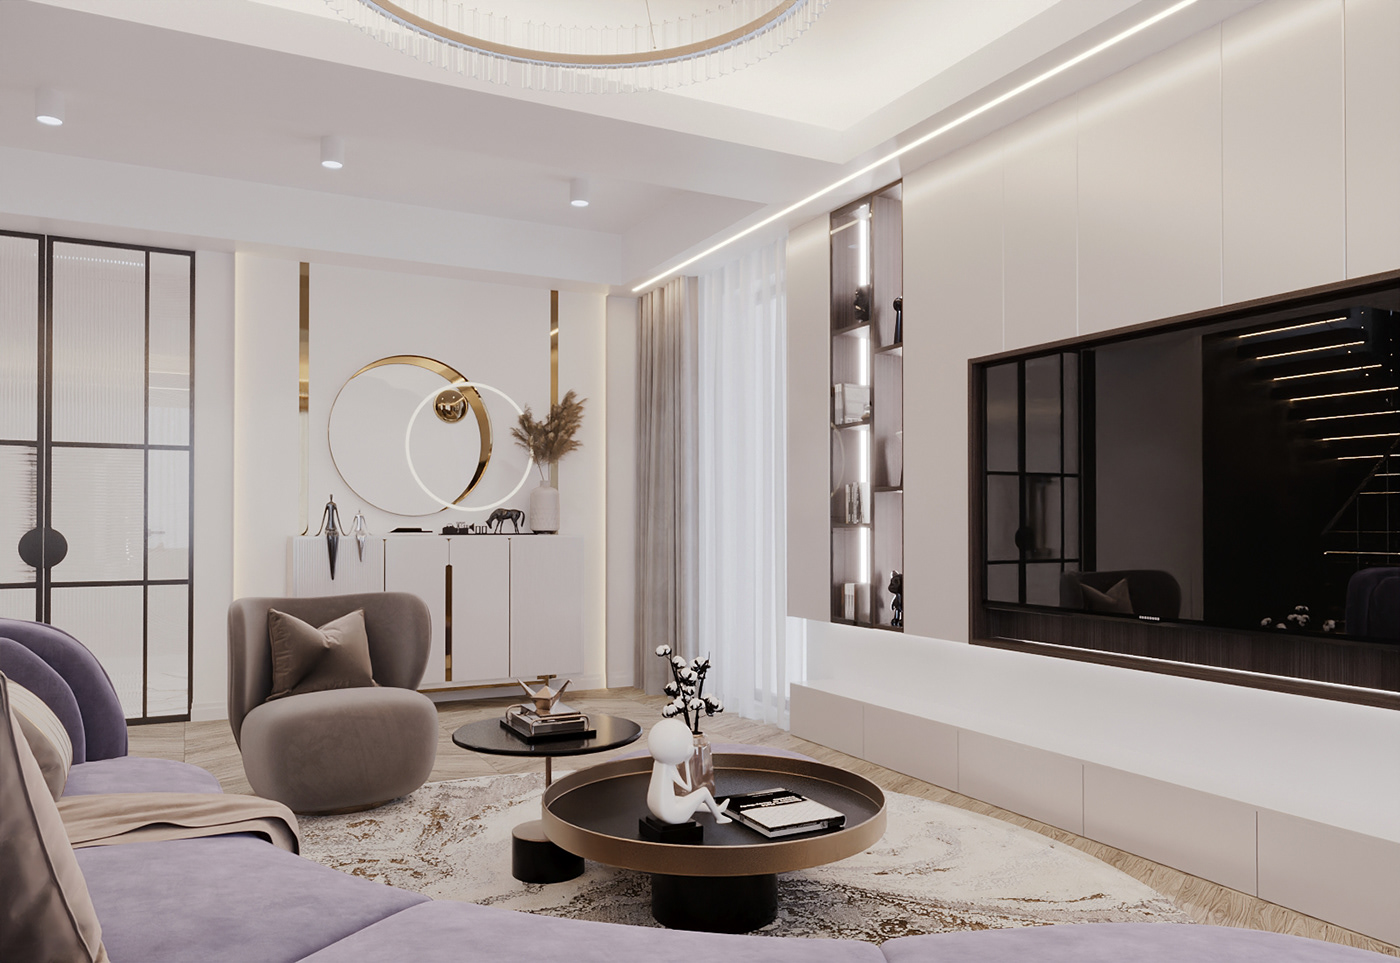 interior design  living room kitchen bedroom bathroom 3ds max corona Render 3D